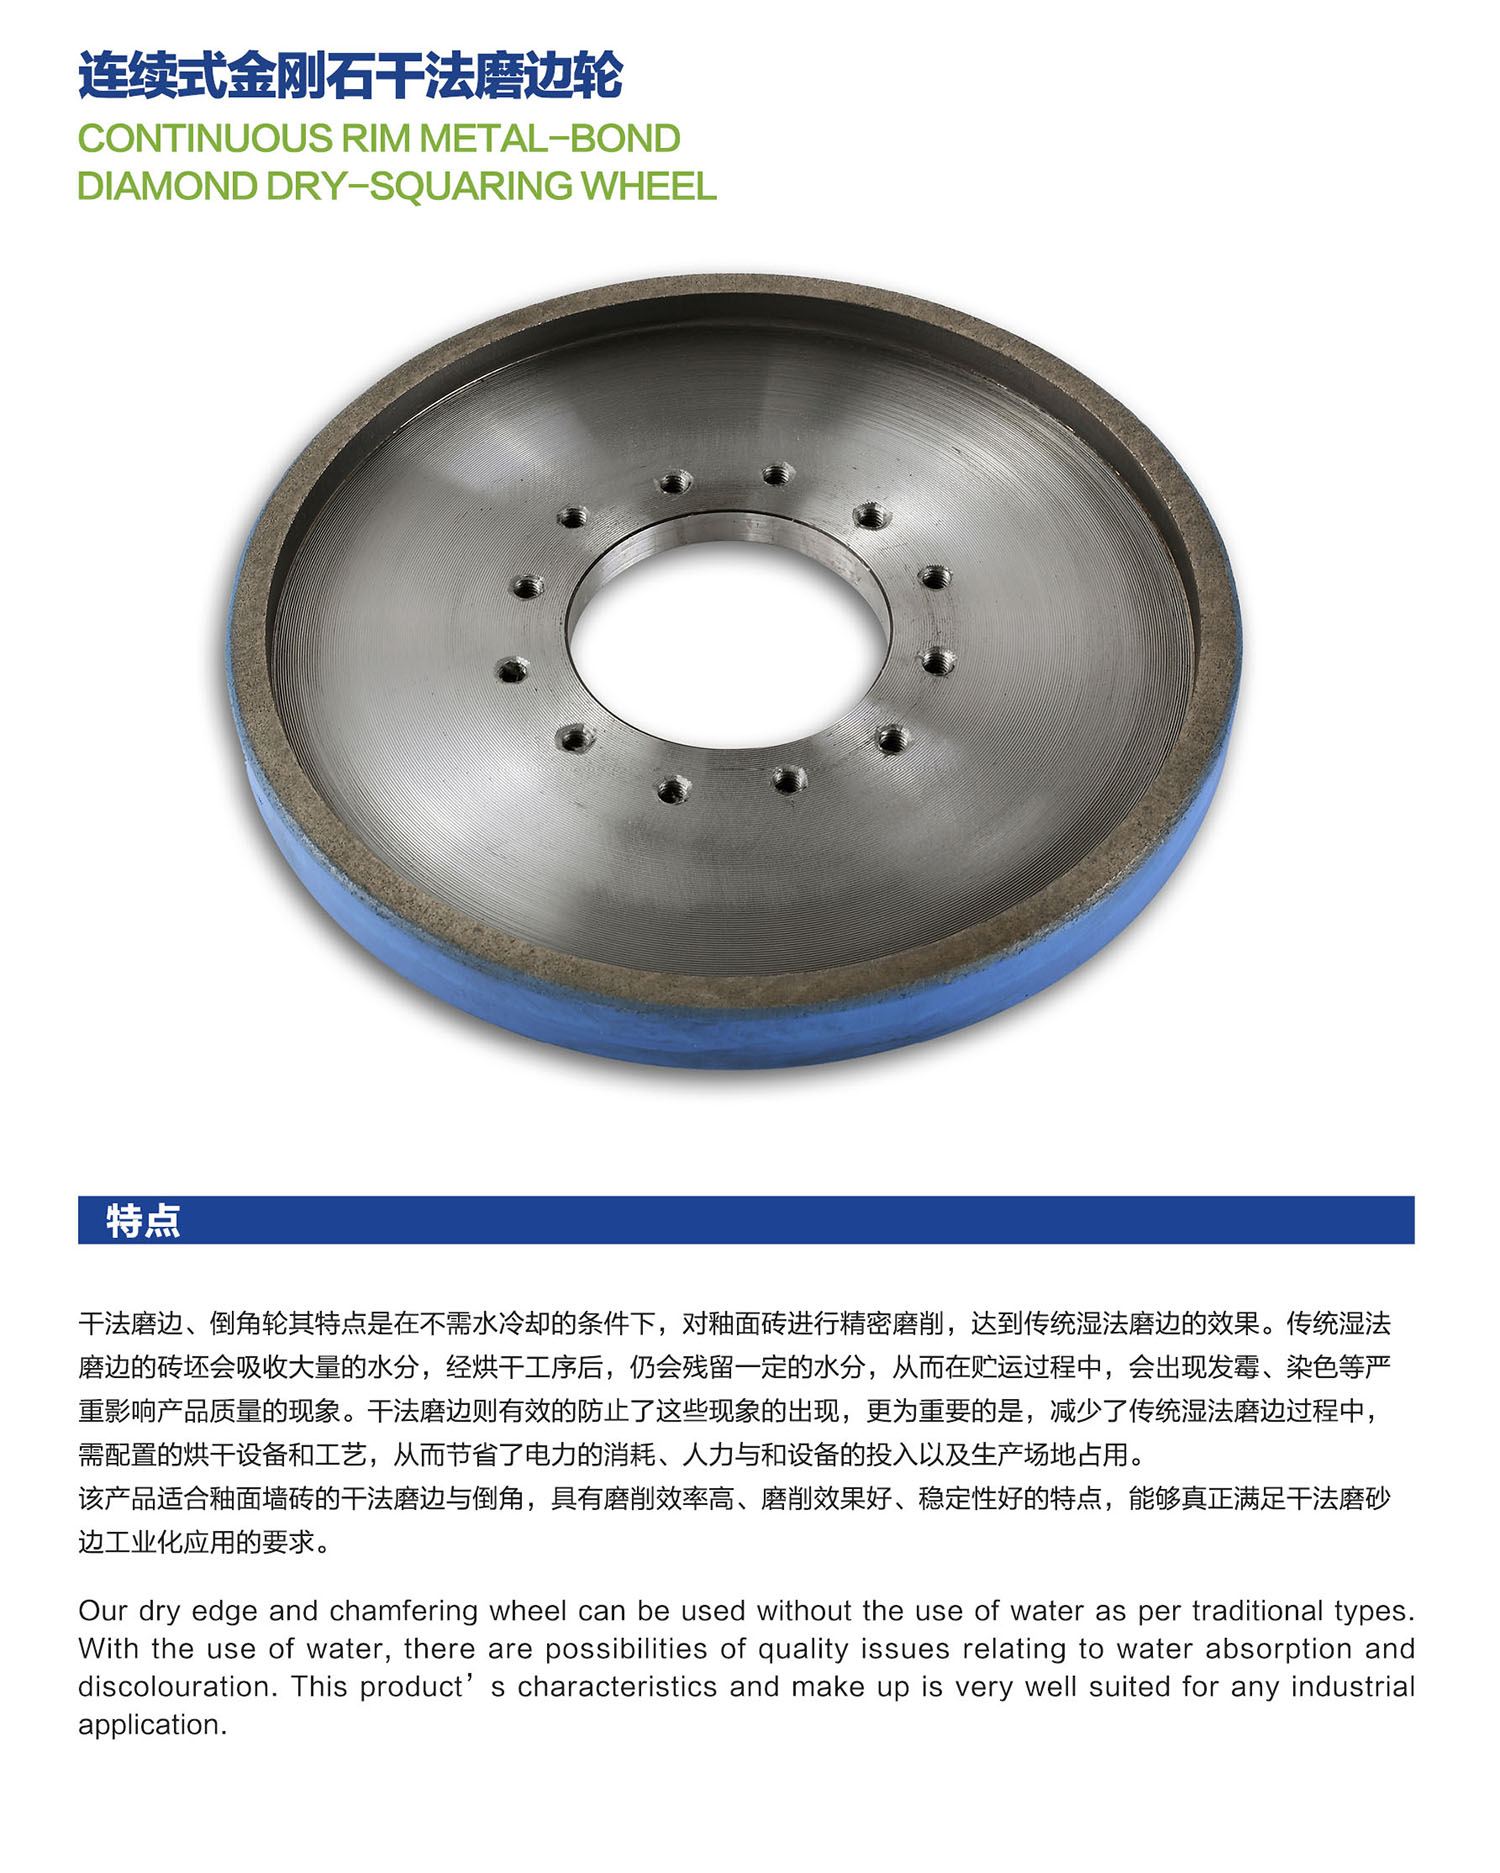 05连续式金刚石干法磨边轮Continuous Rim Metal-Bond Diamond Dry-Squaring wheel.jpg